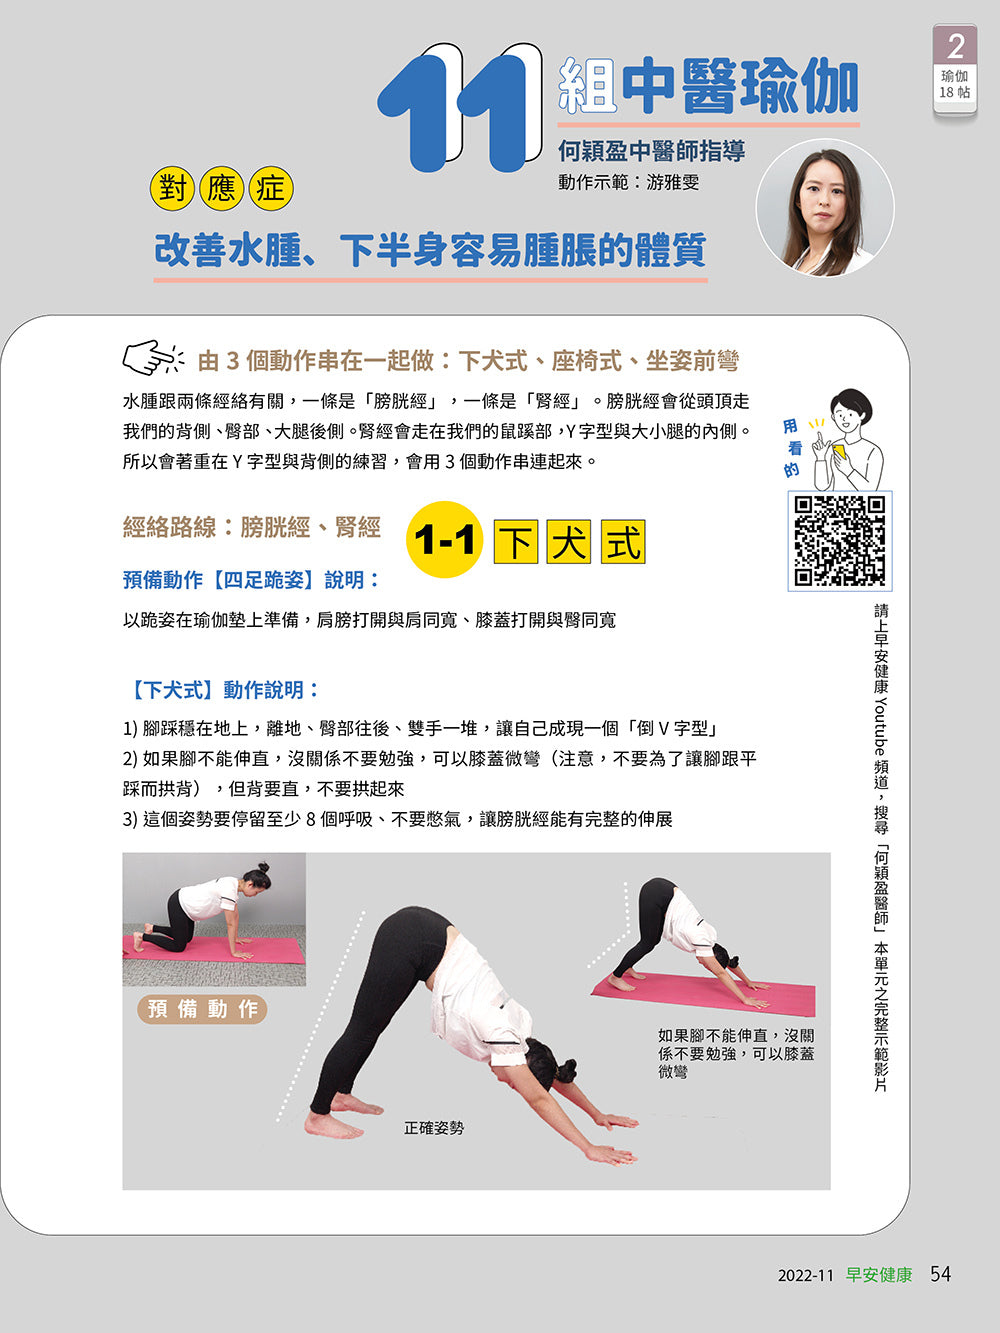 🔥熱銷推薦🔥早安健康 2022/11.12月 《練瑜伽治百病》